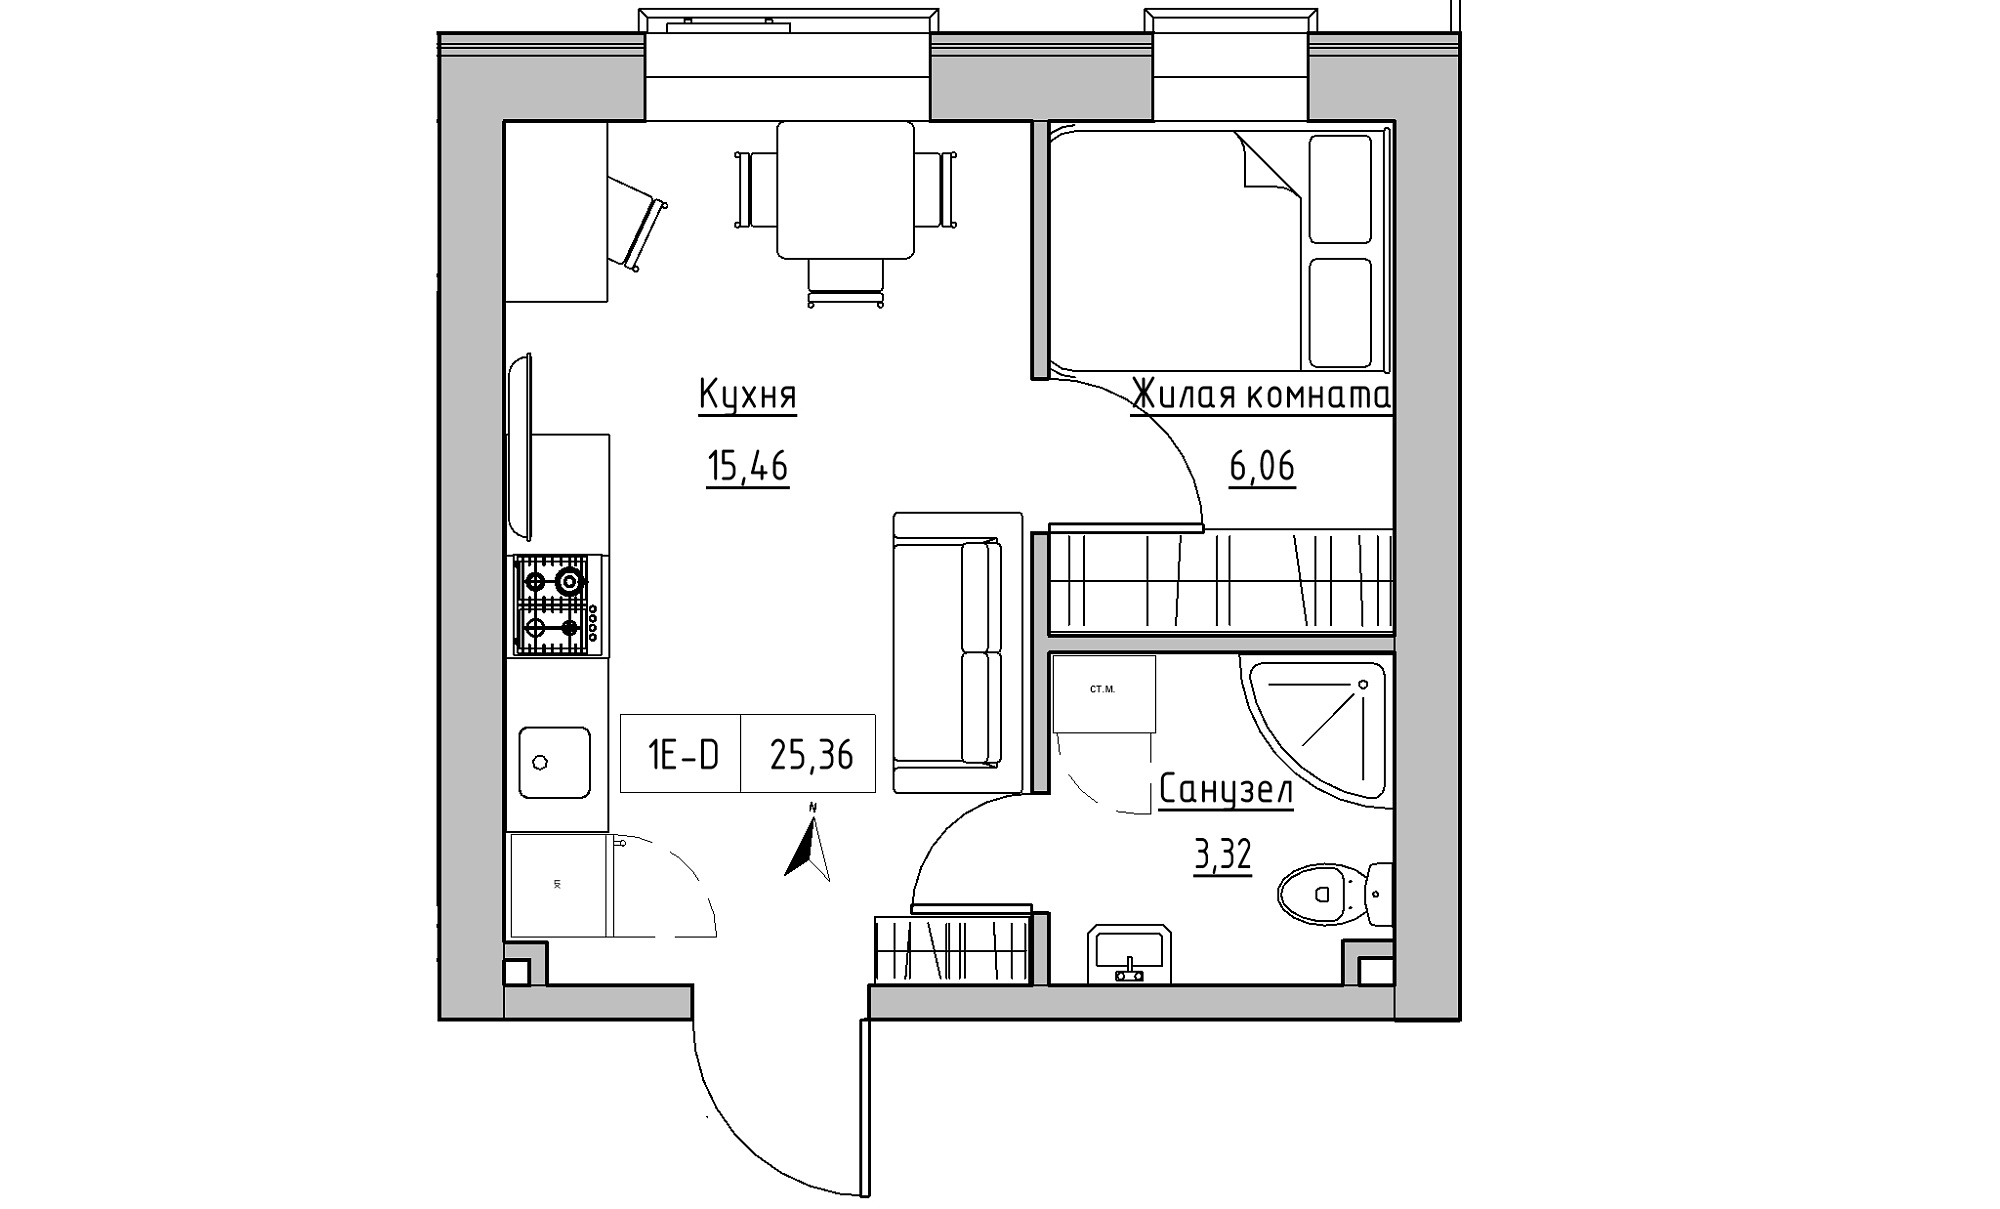 Планування 1-к квартира площею 25.36м2, KS-016-04/0002.